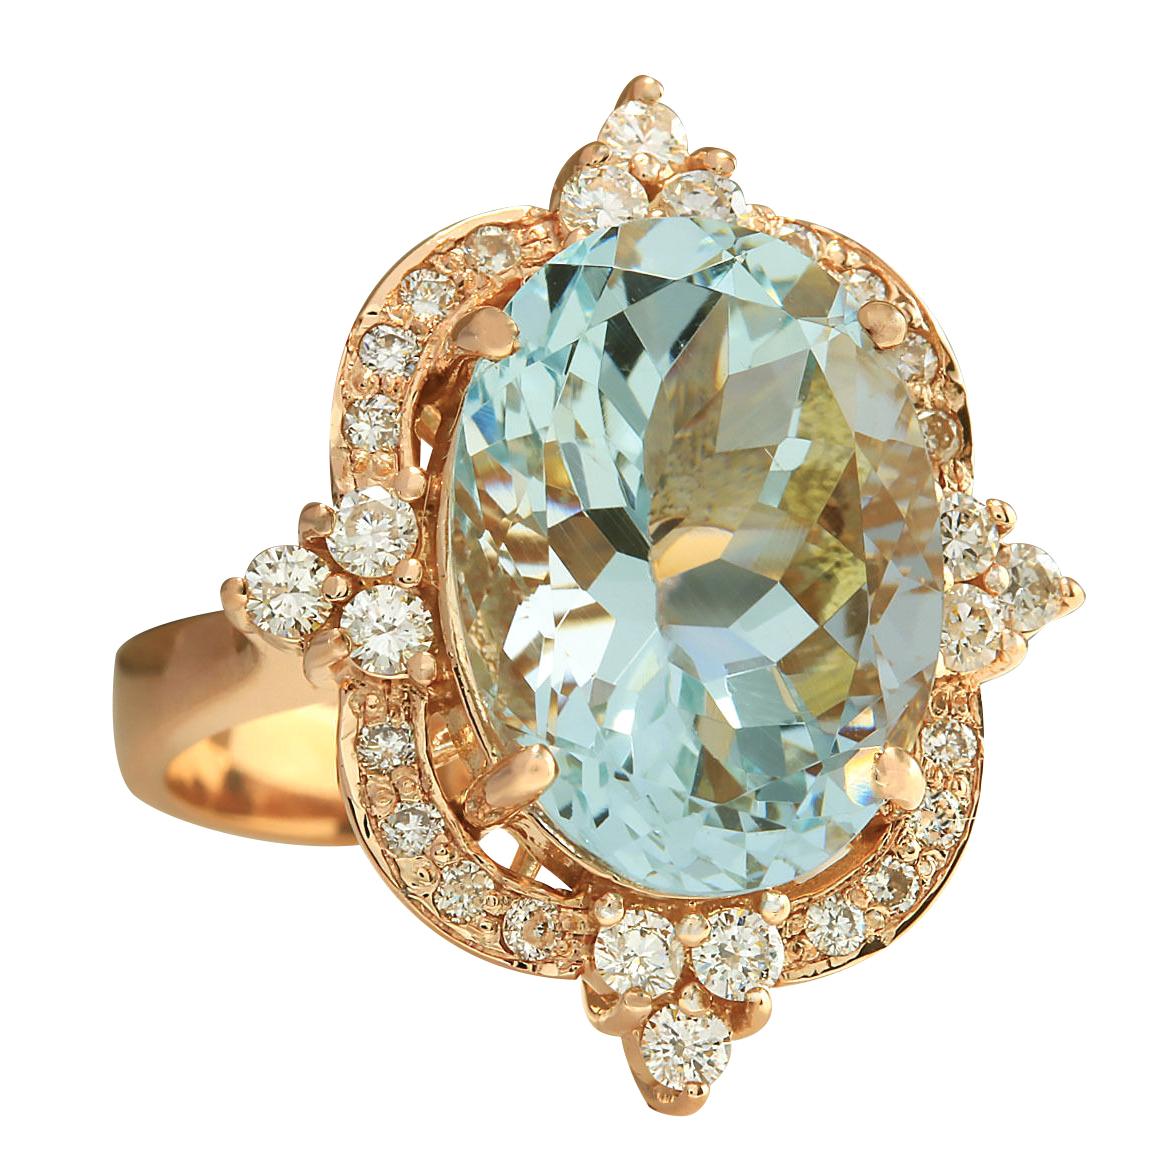 8.27 Carat Natural Aquamarine 14 Karat Rose Gold Diamond Ring
Stamped: 14K Rose Gold
Total Ring Weight: 8.8 Grams
Total Natural Aquamarine Weight is 7.62 Carat (Measures: 15.00x11.00 mm)
Color: Blue
Total Natural Diamond Weight is 0.65 Carat
Color: